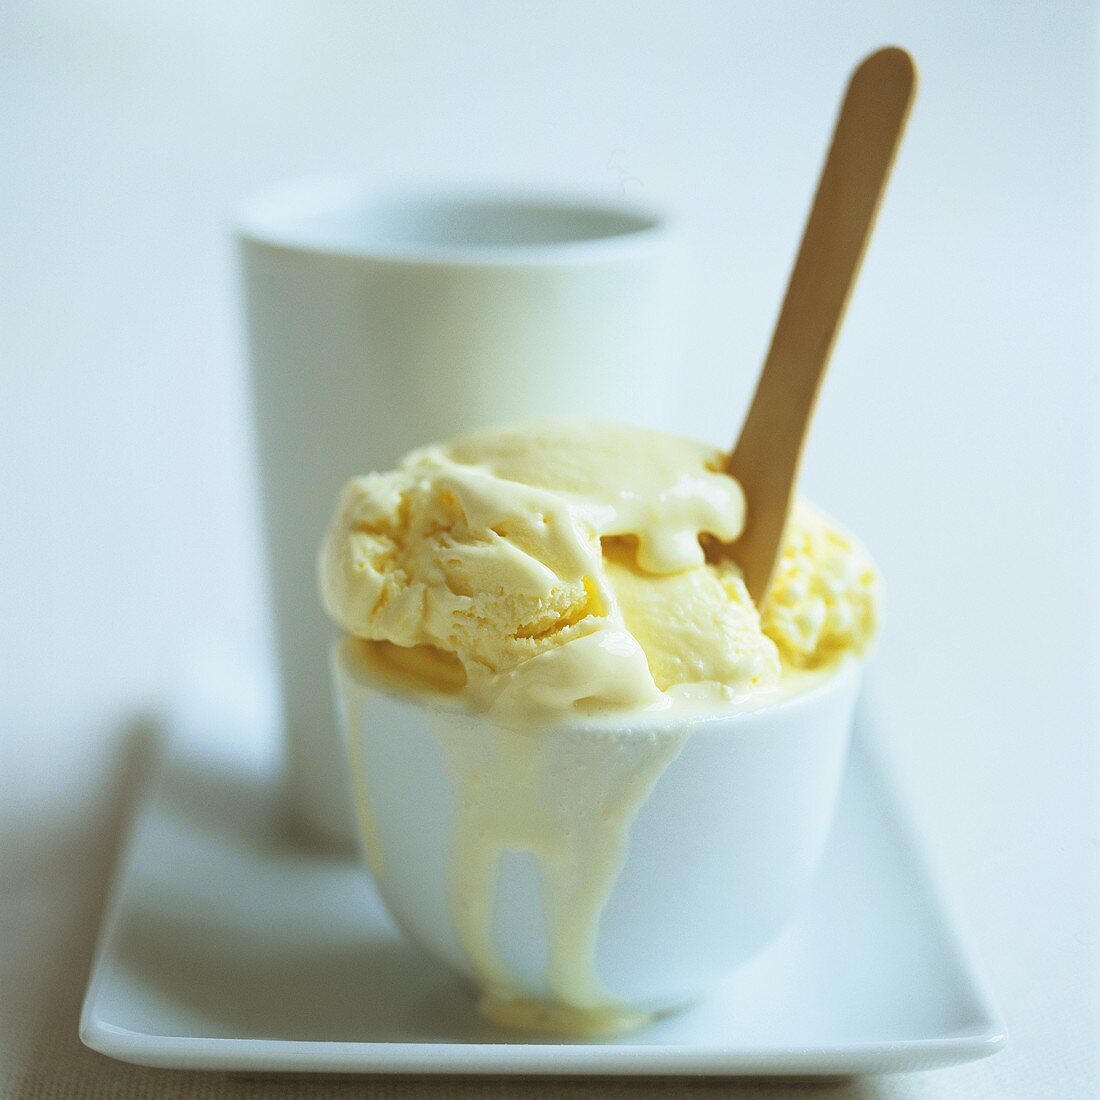 Vanilla ice cream in a white bowl